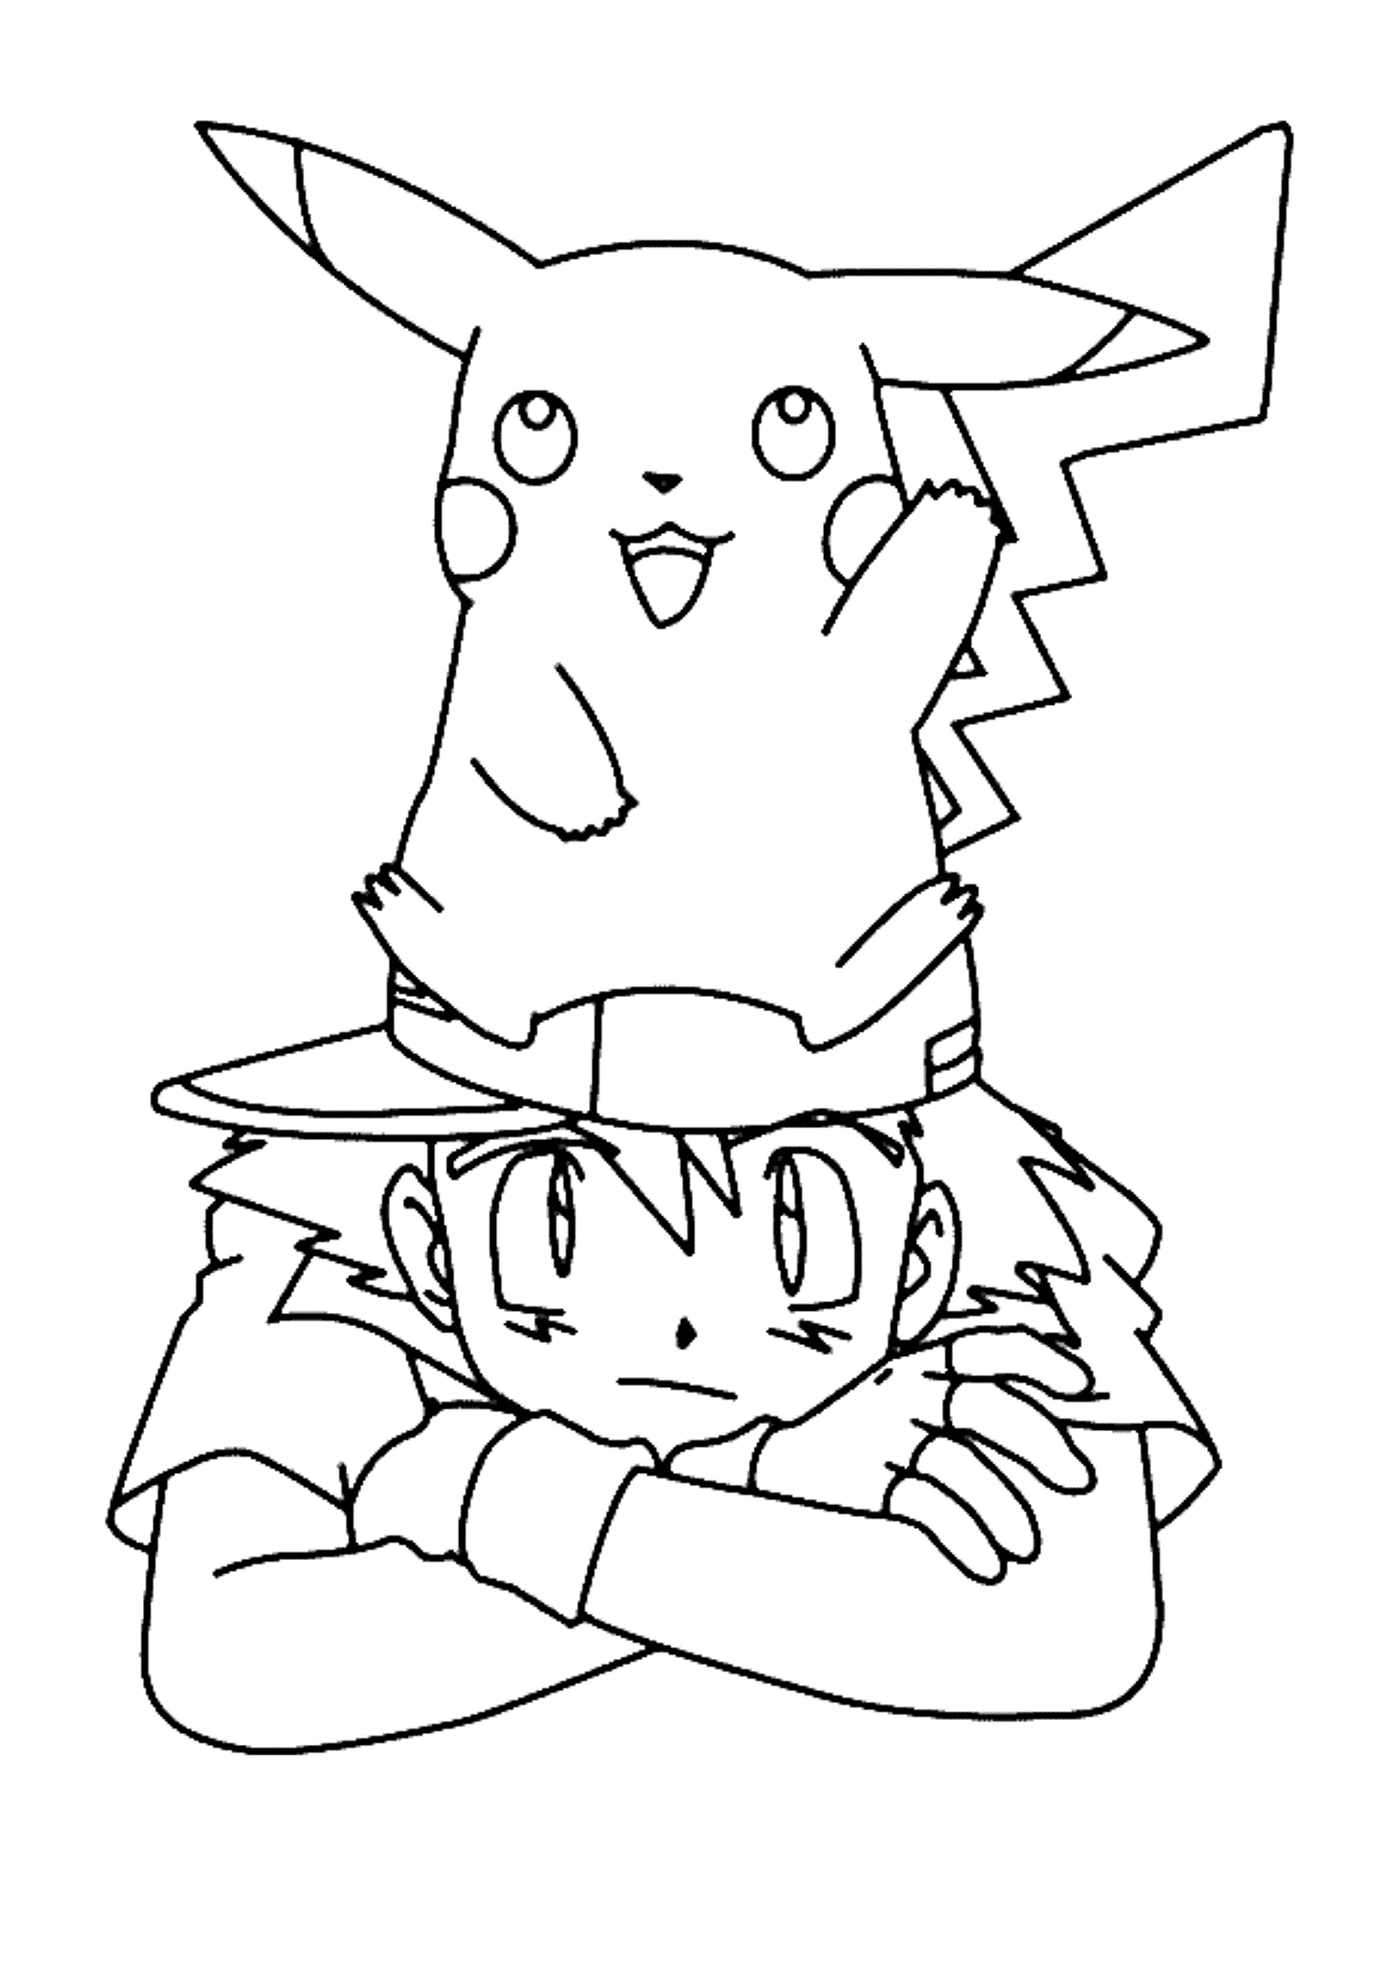  Ein Junge und Pikachu im Tandem 